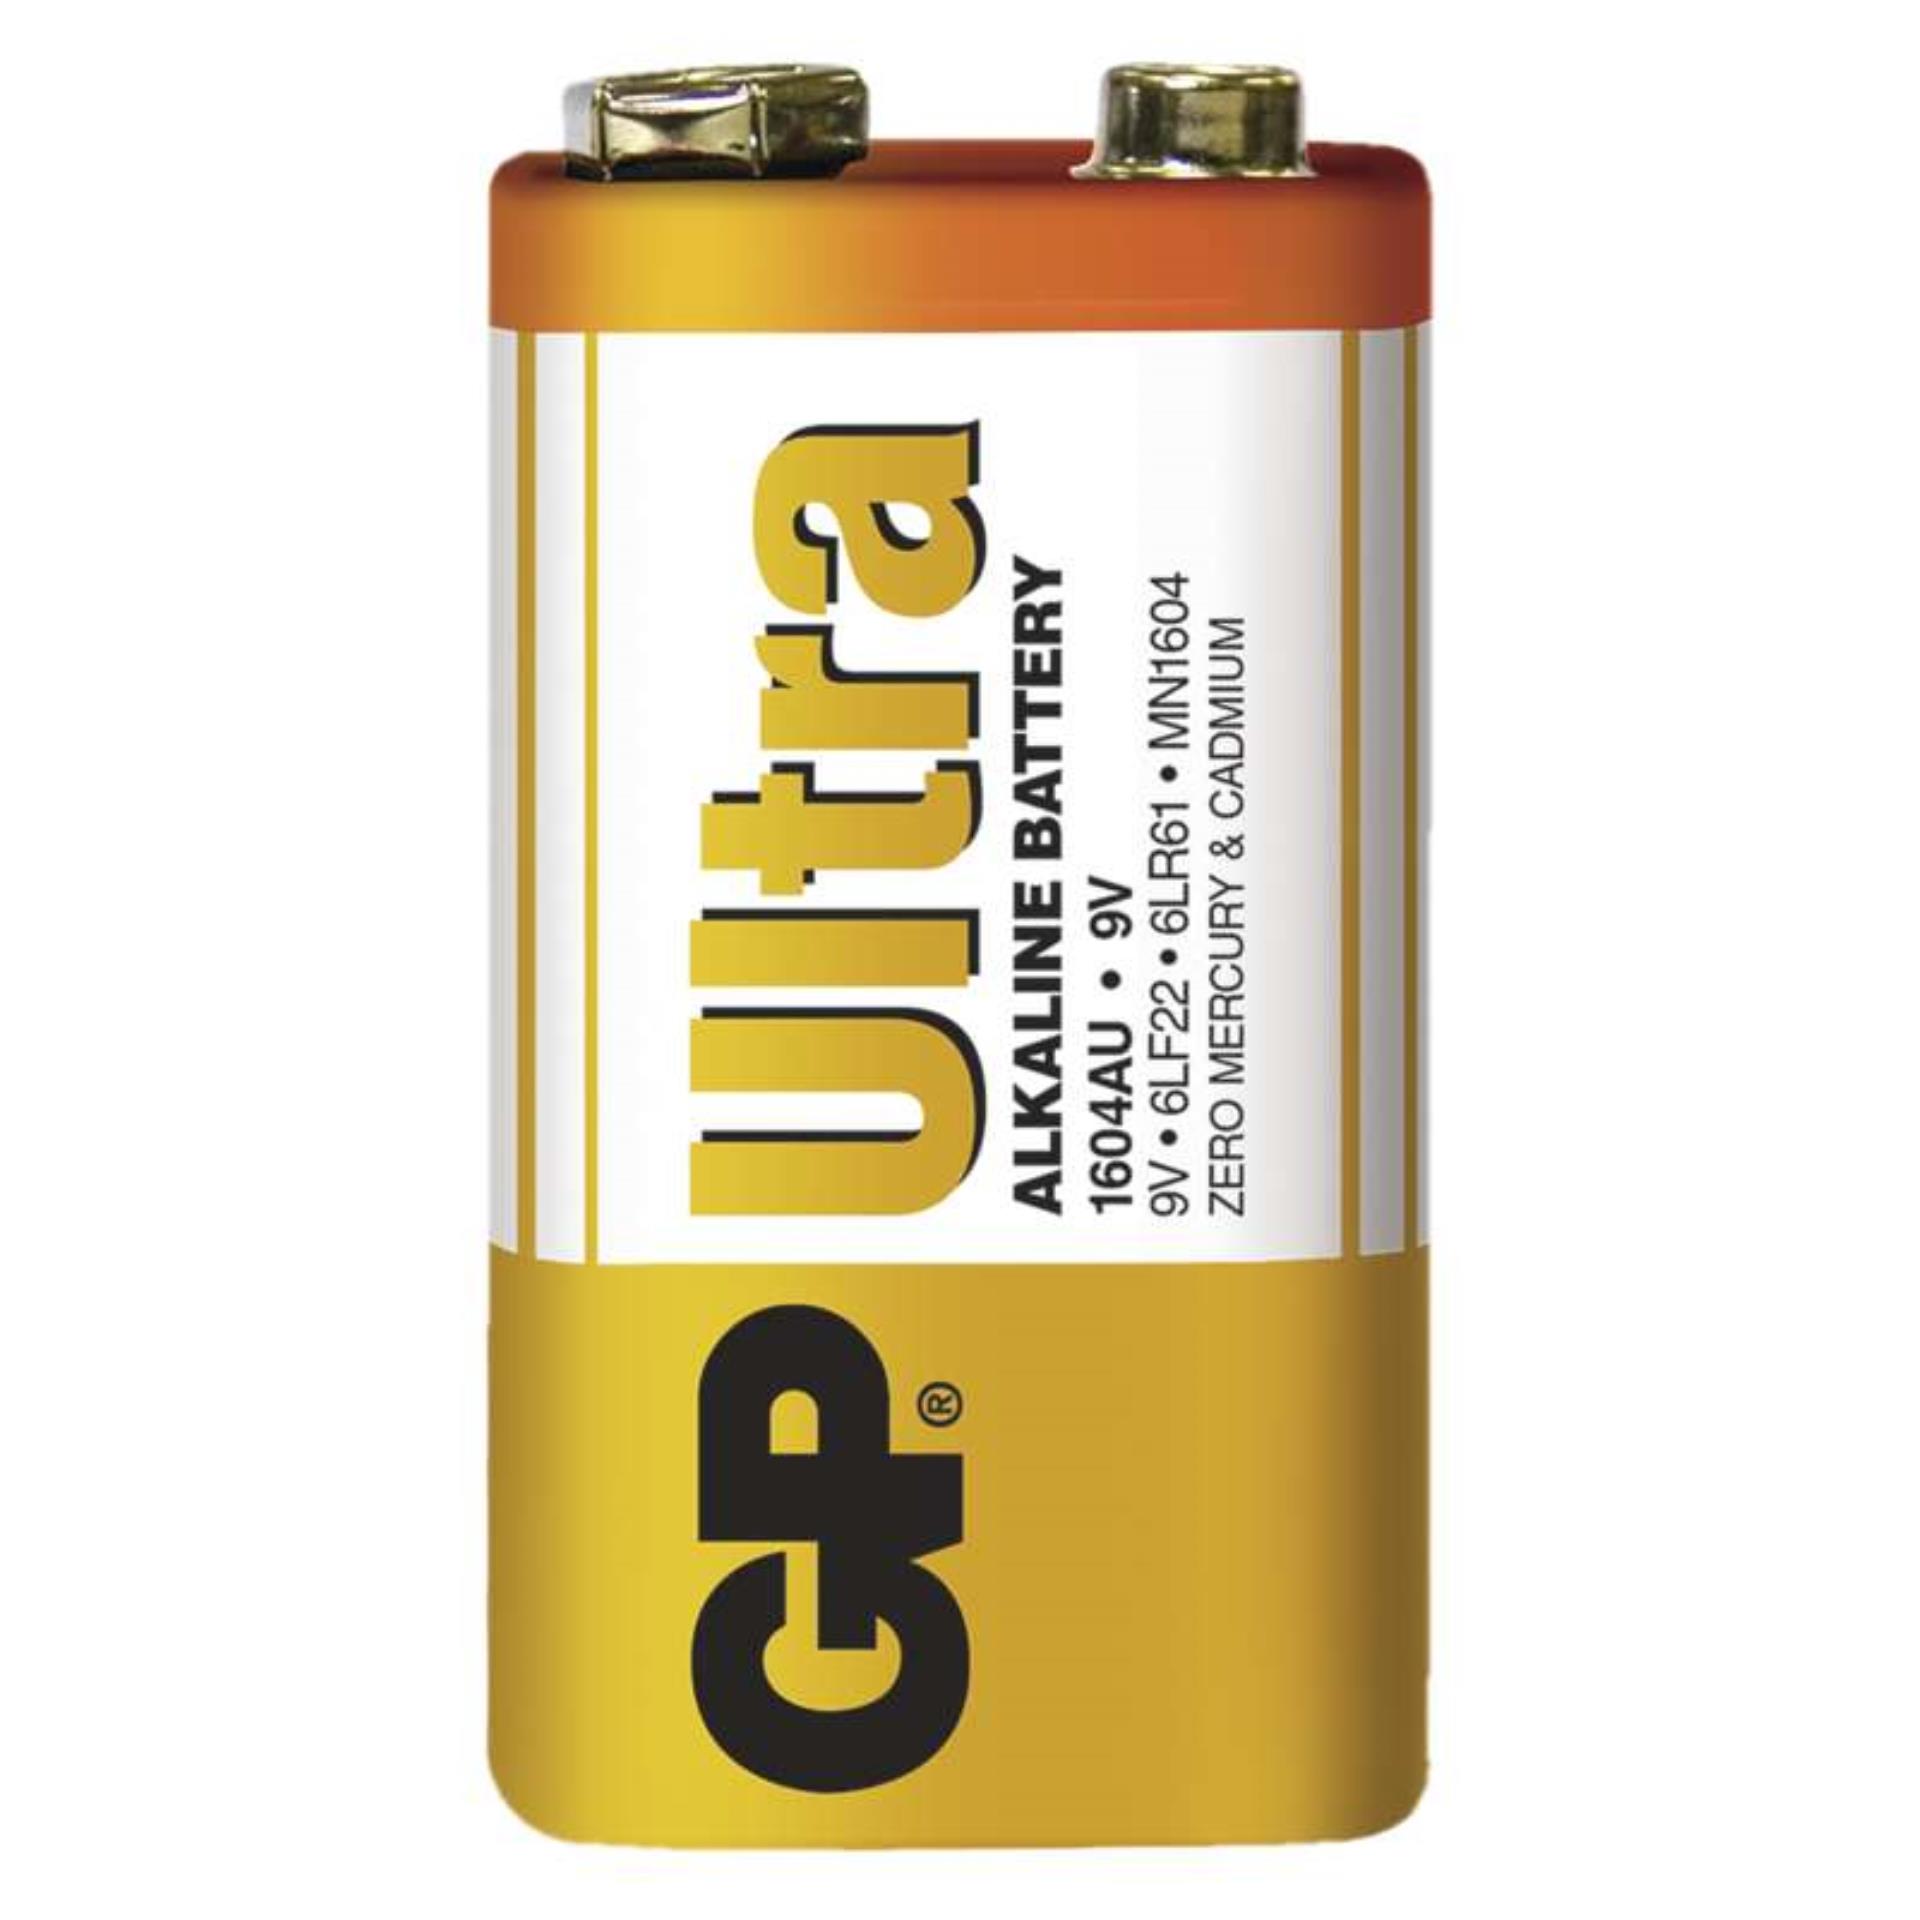 Baterie GP Ultra Alkaline 9V, 6LF22 (1604), 1 ks